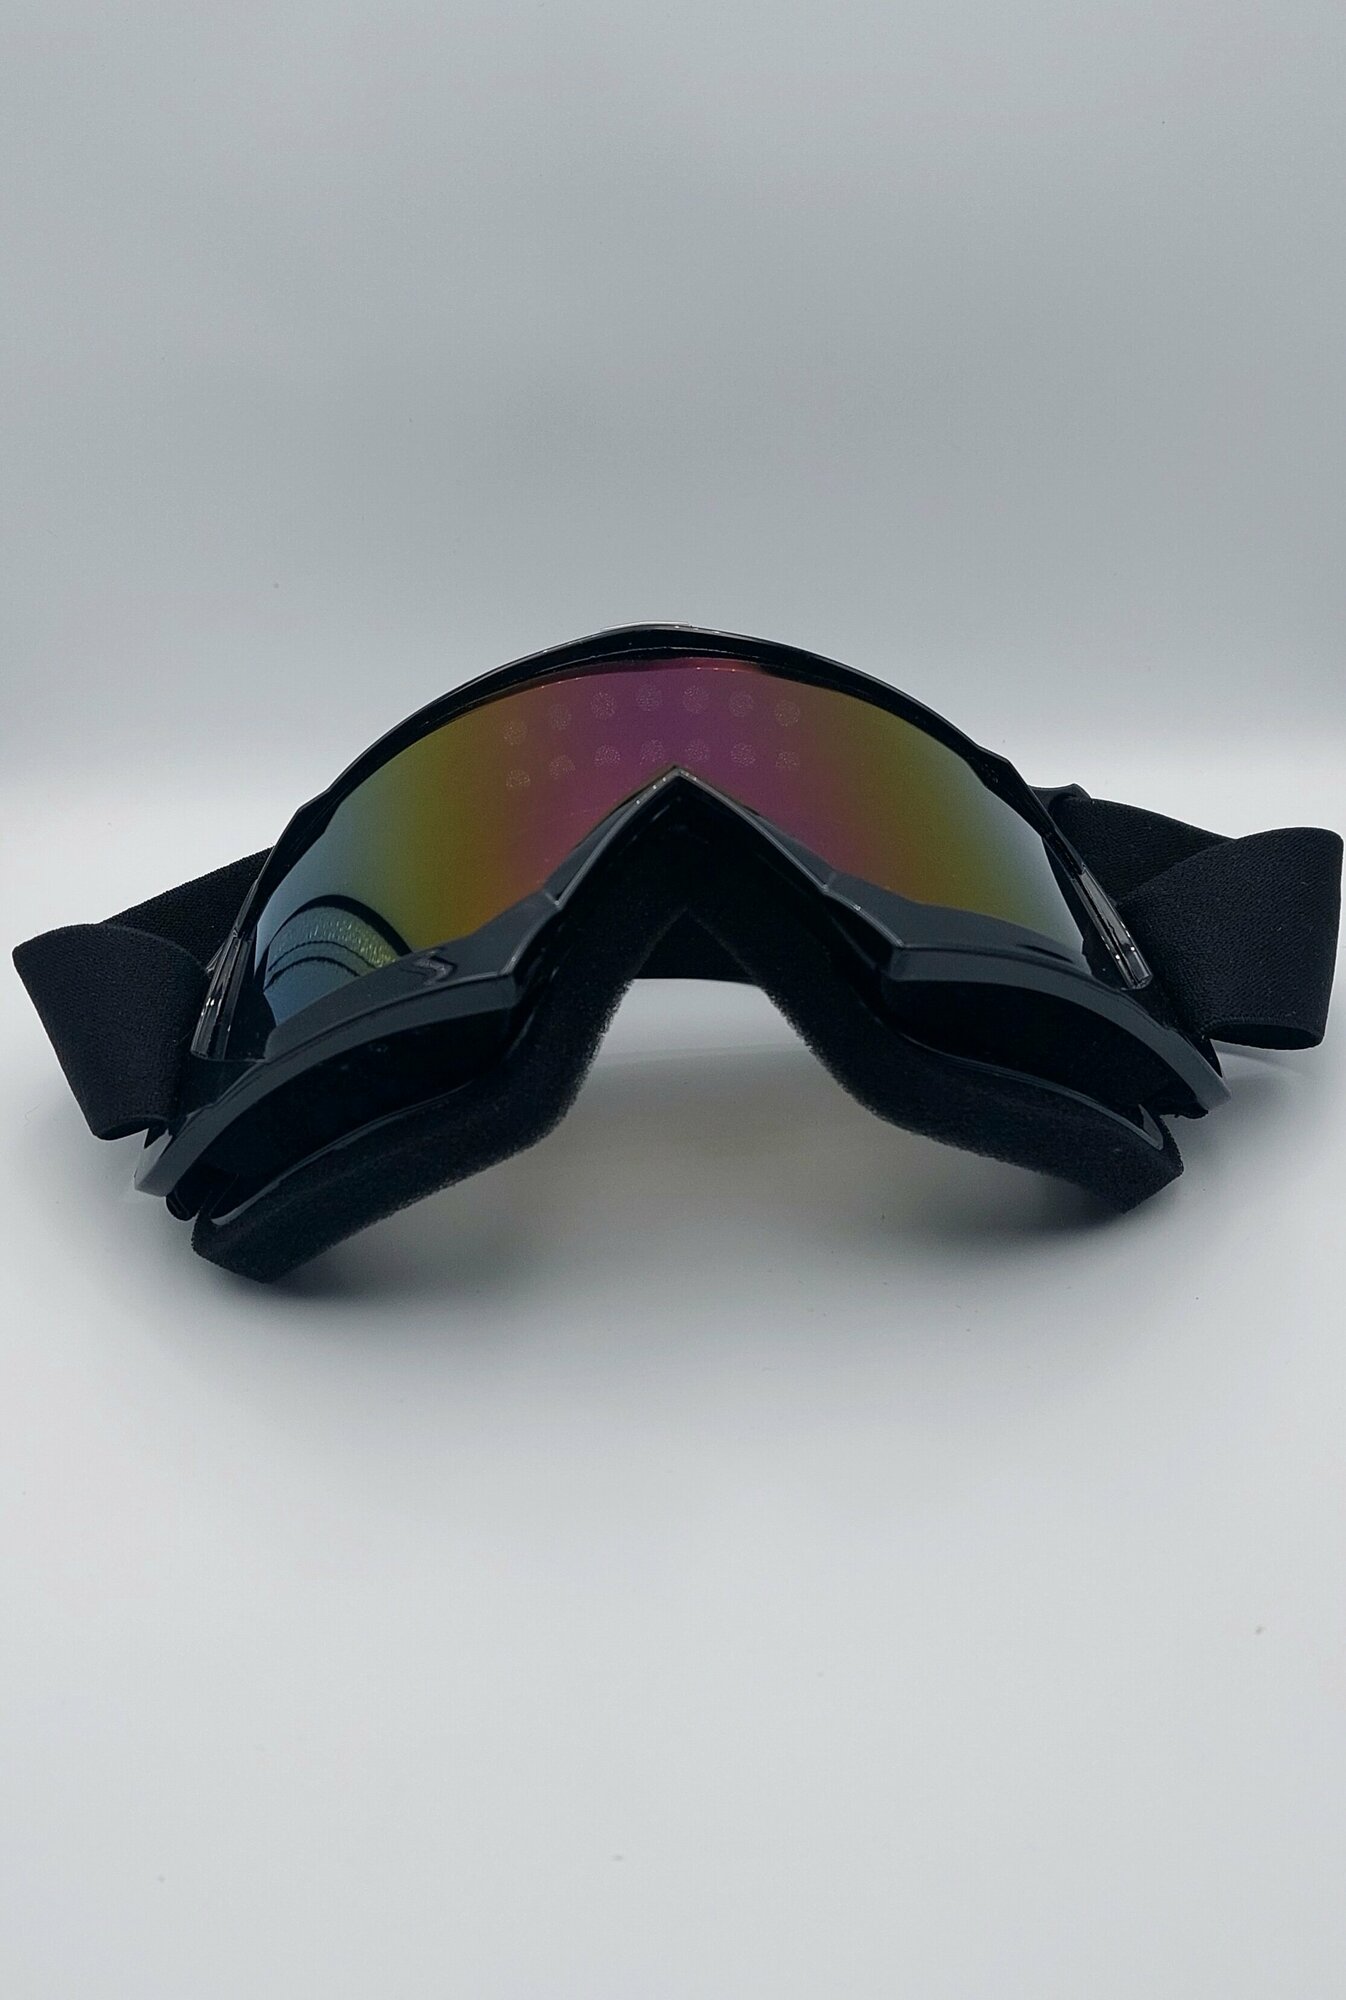 Защитная лыжная маска для езды на велосипеде мотоспорта рыбалки бега скалолазания